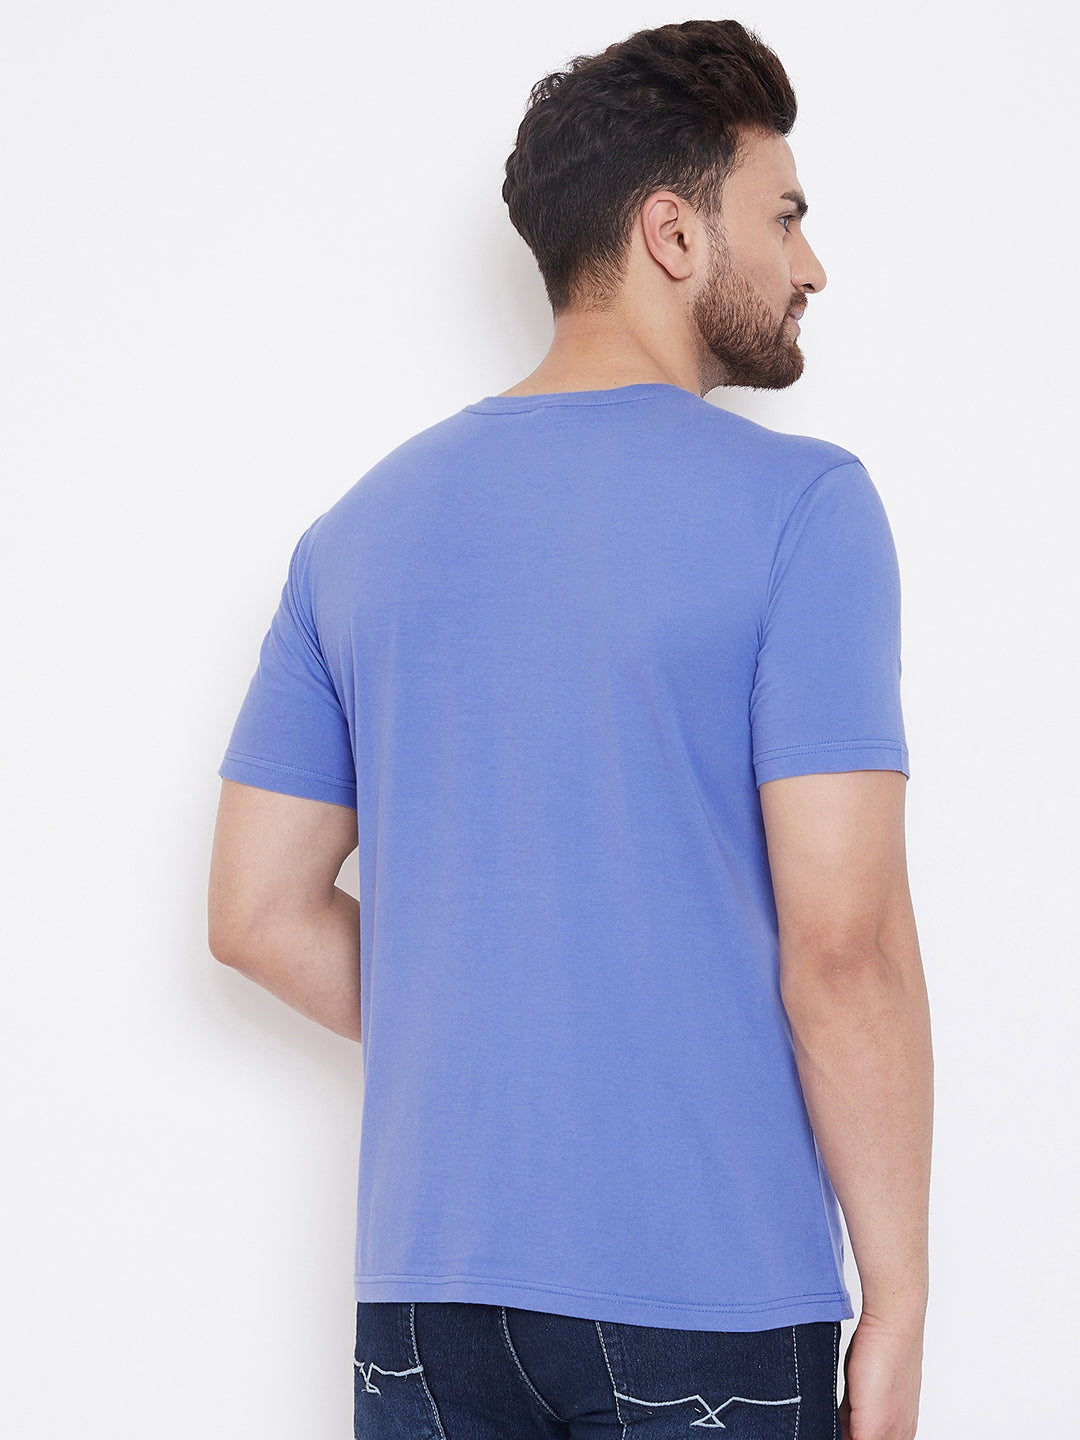 Blue/Black Men's Half Sleeves Round Neck T-Shirt